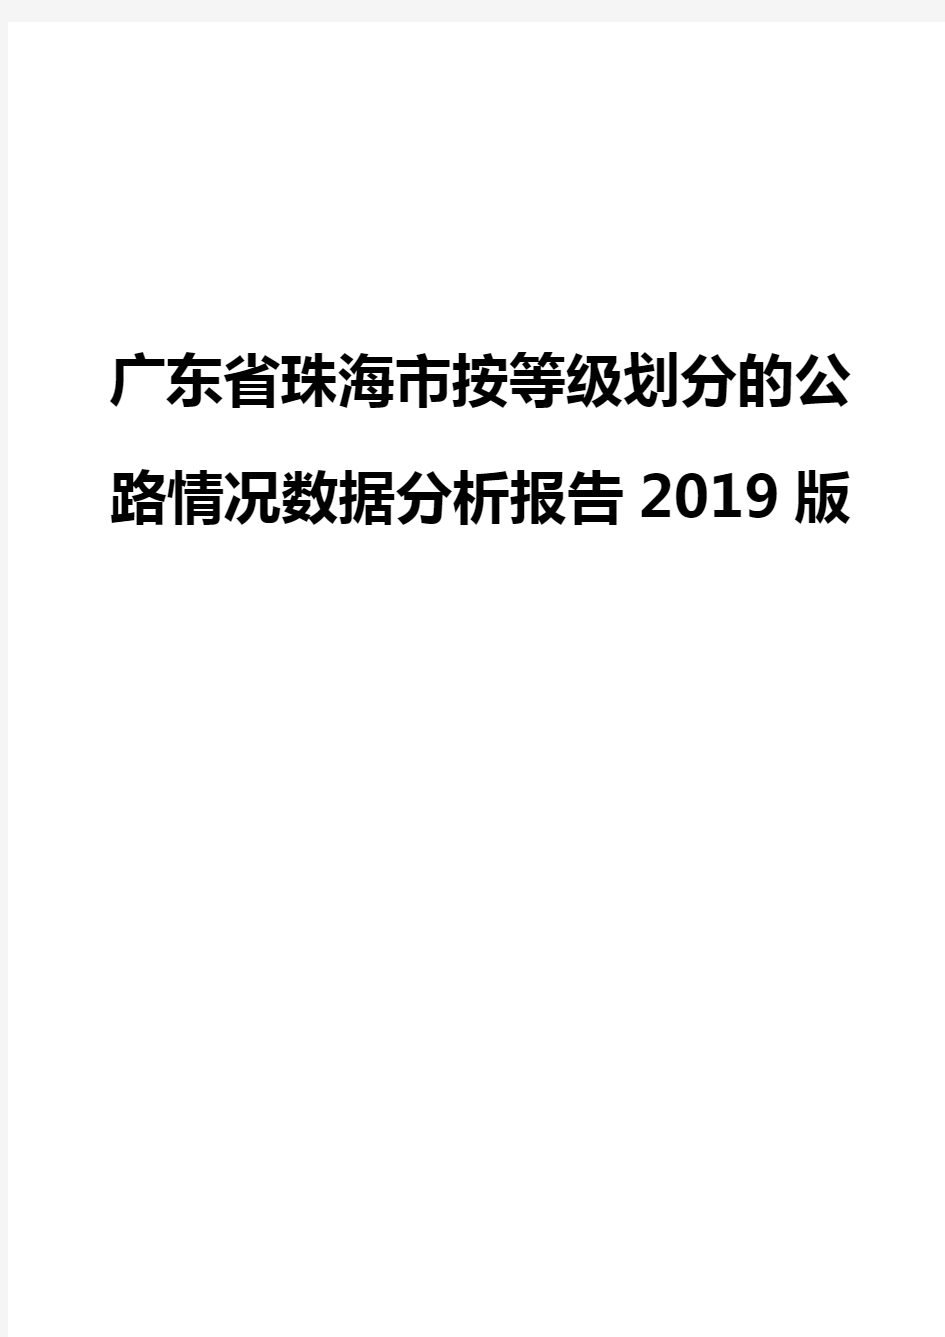 广东省珠海市按等级划分的公路情况数据分析报告2019版